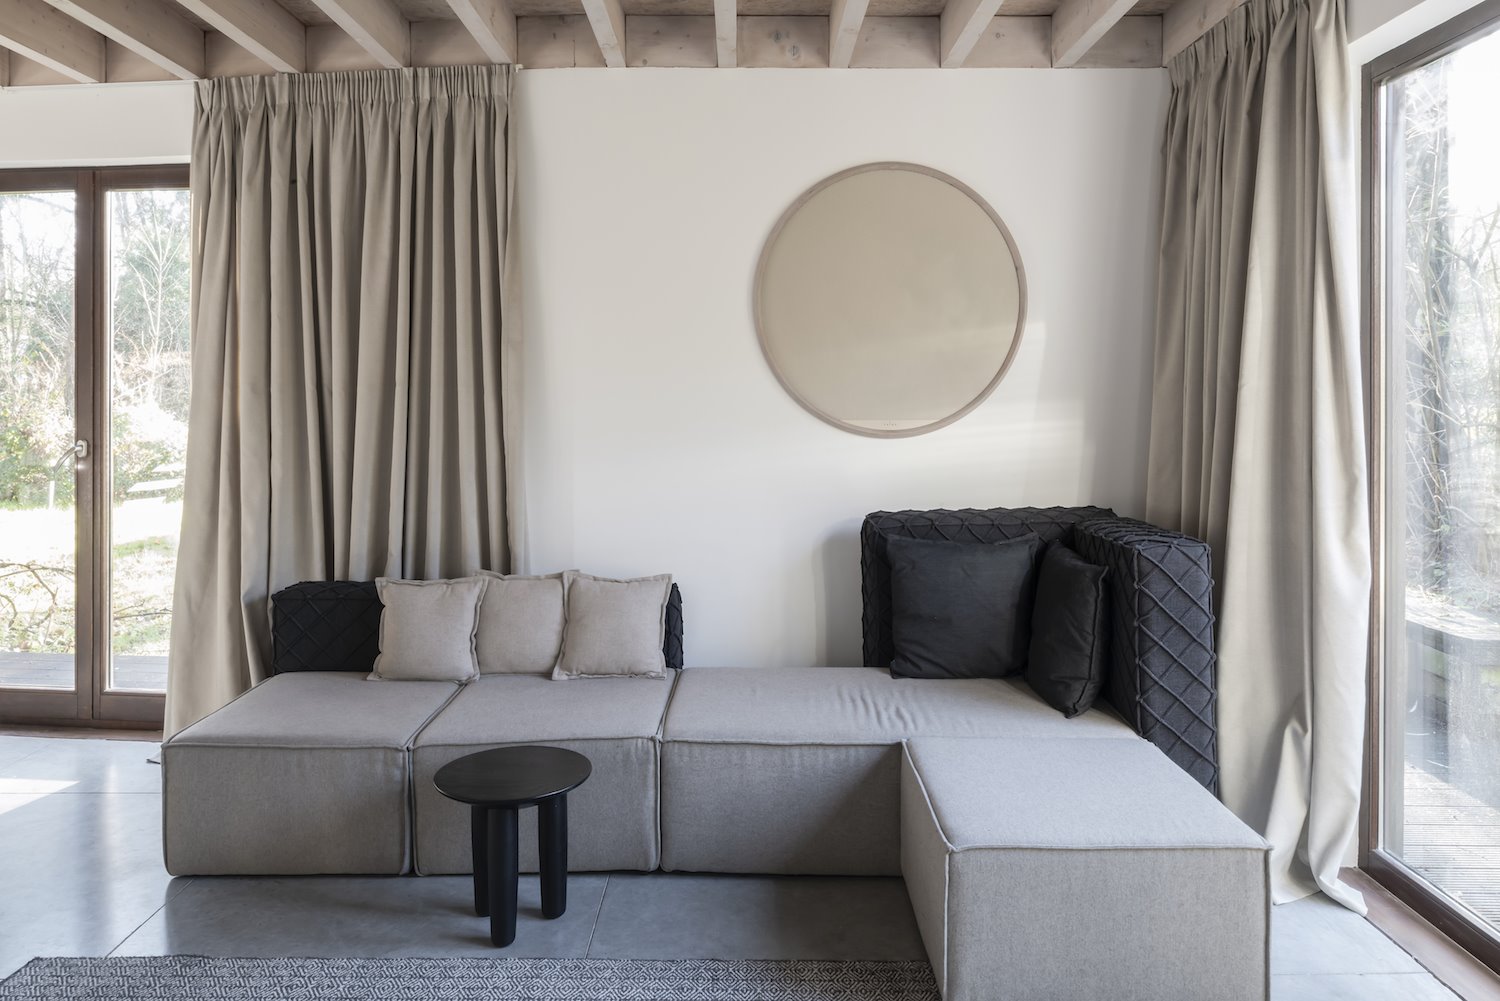 Salon con sofá modular de color gris y cortinas ocres